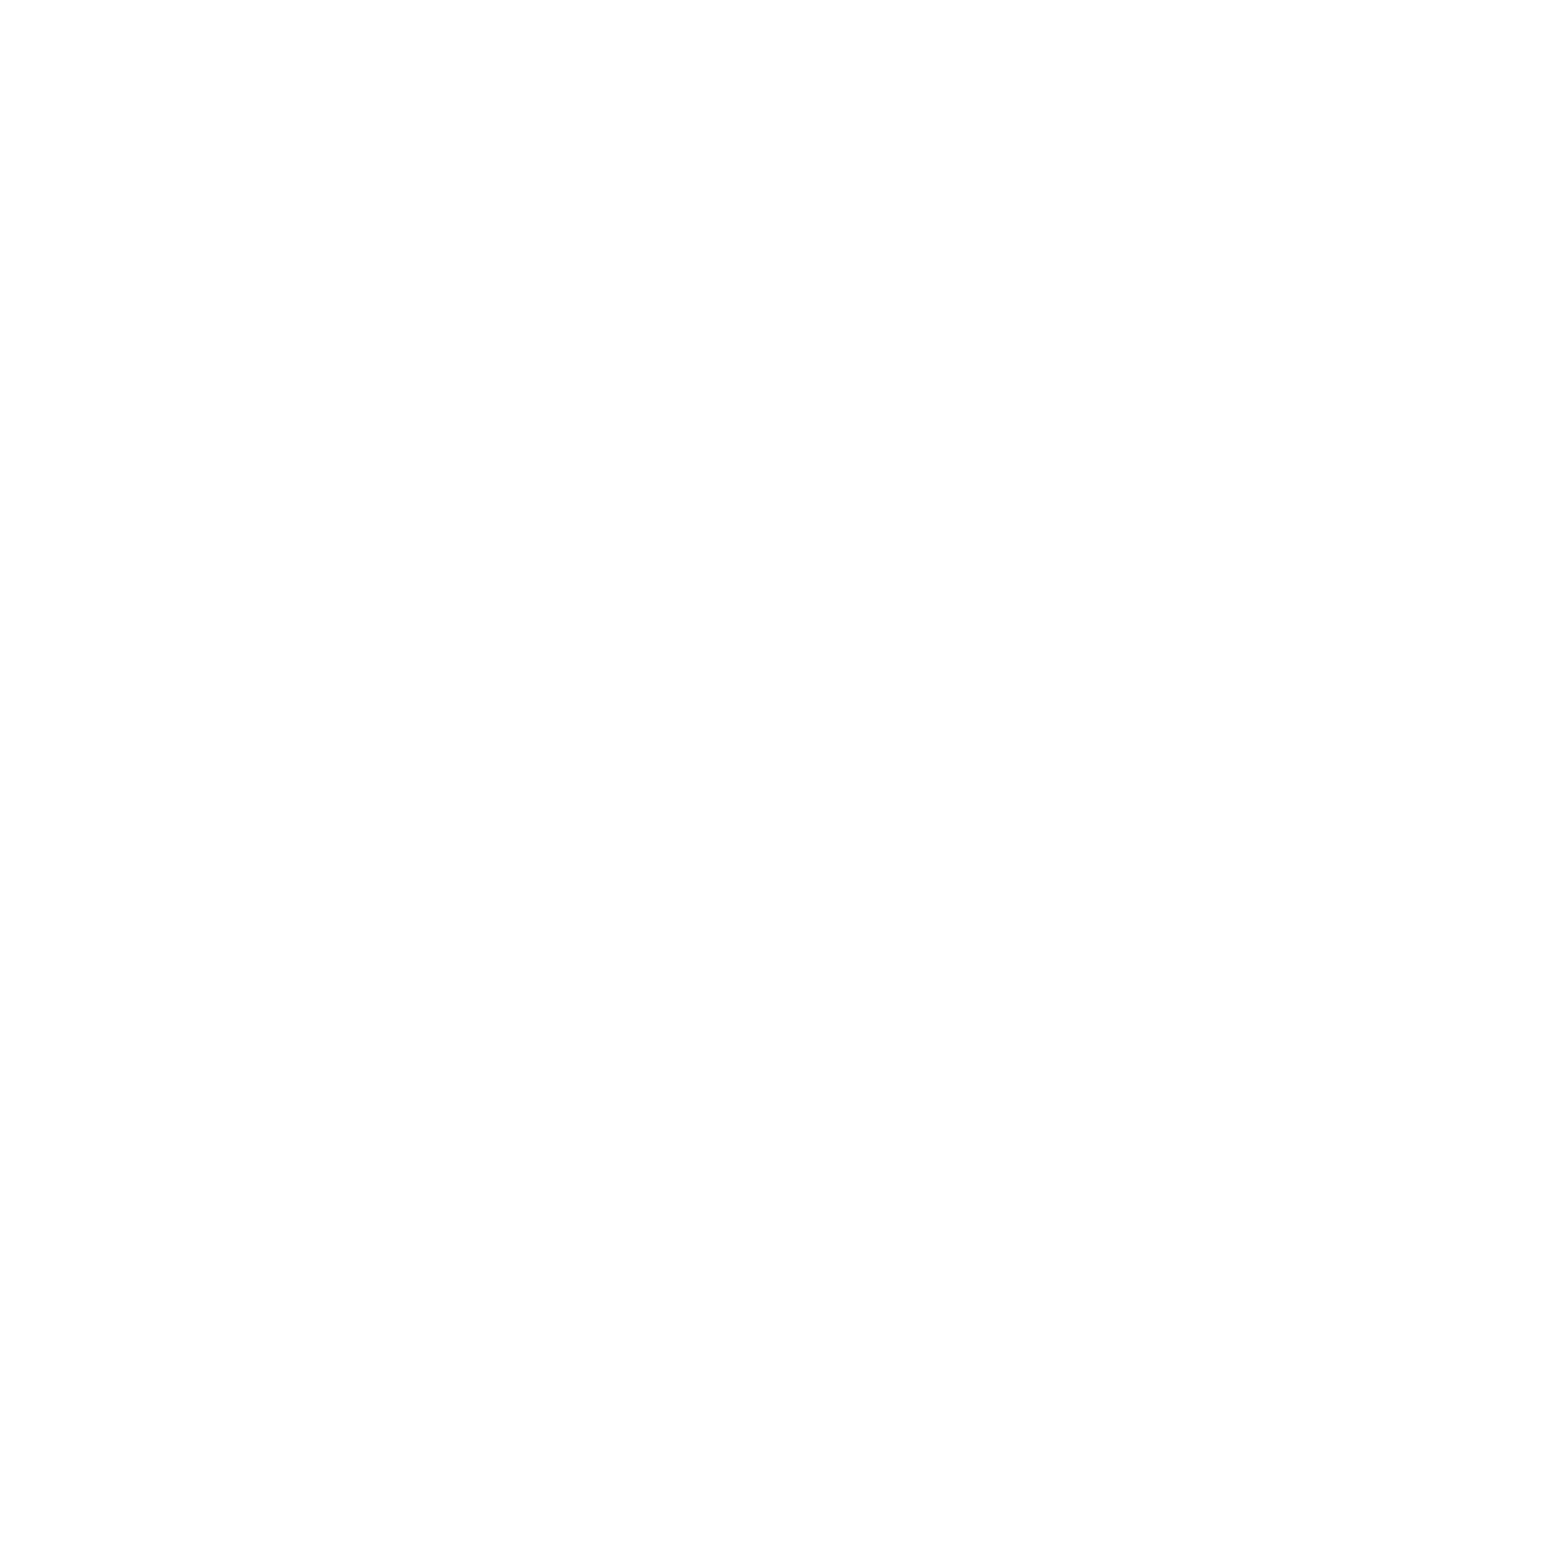 Electricity Generating Public Company logo pour fonds sombres (PNG transparent)